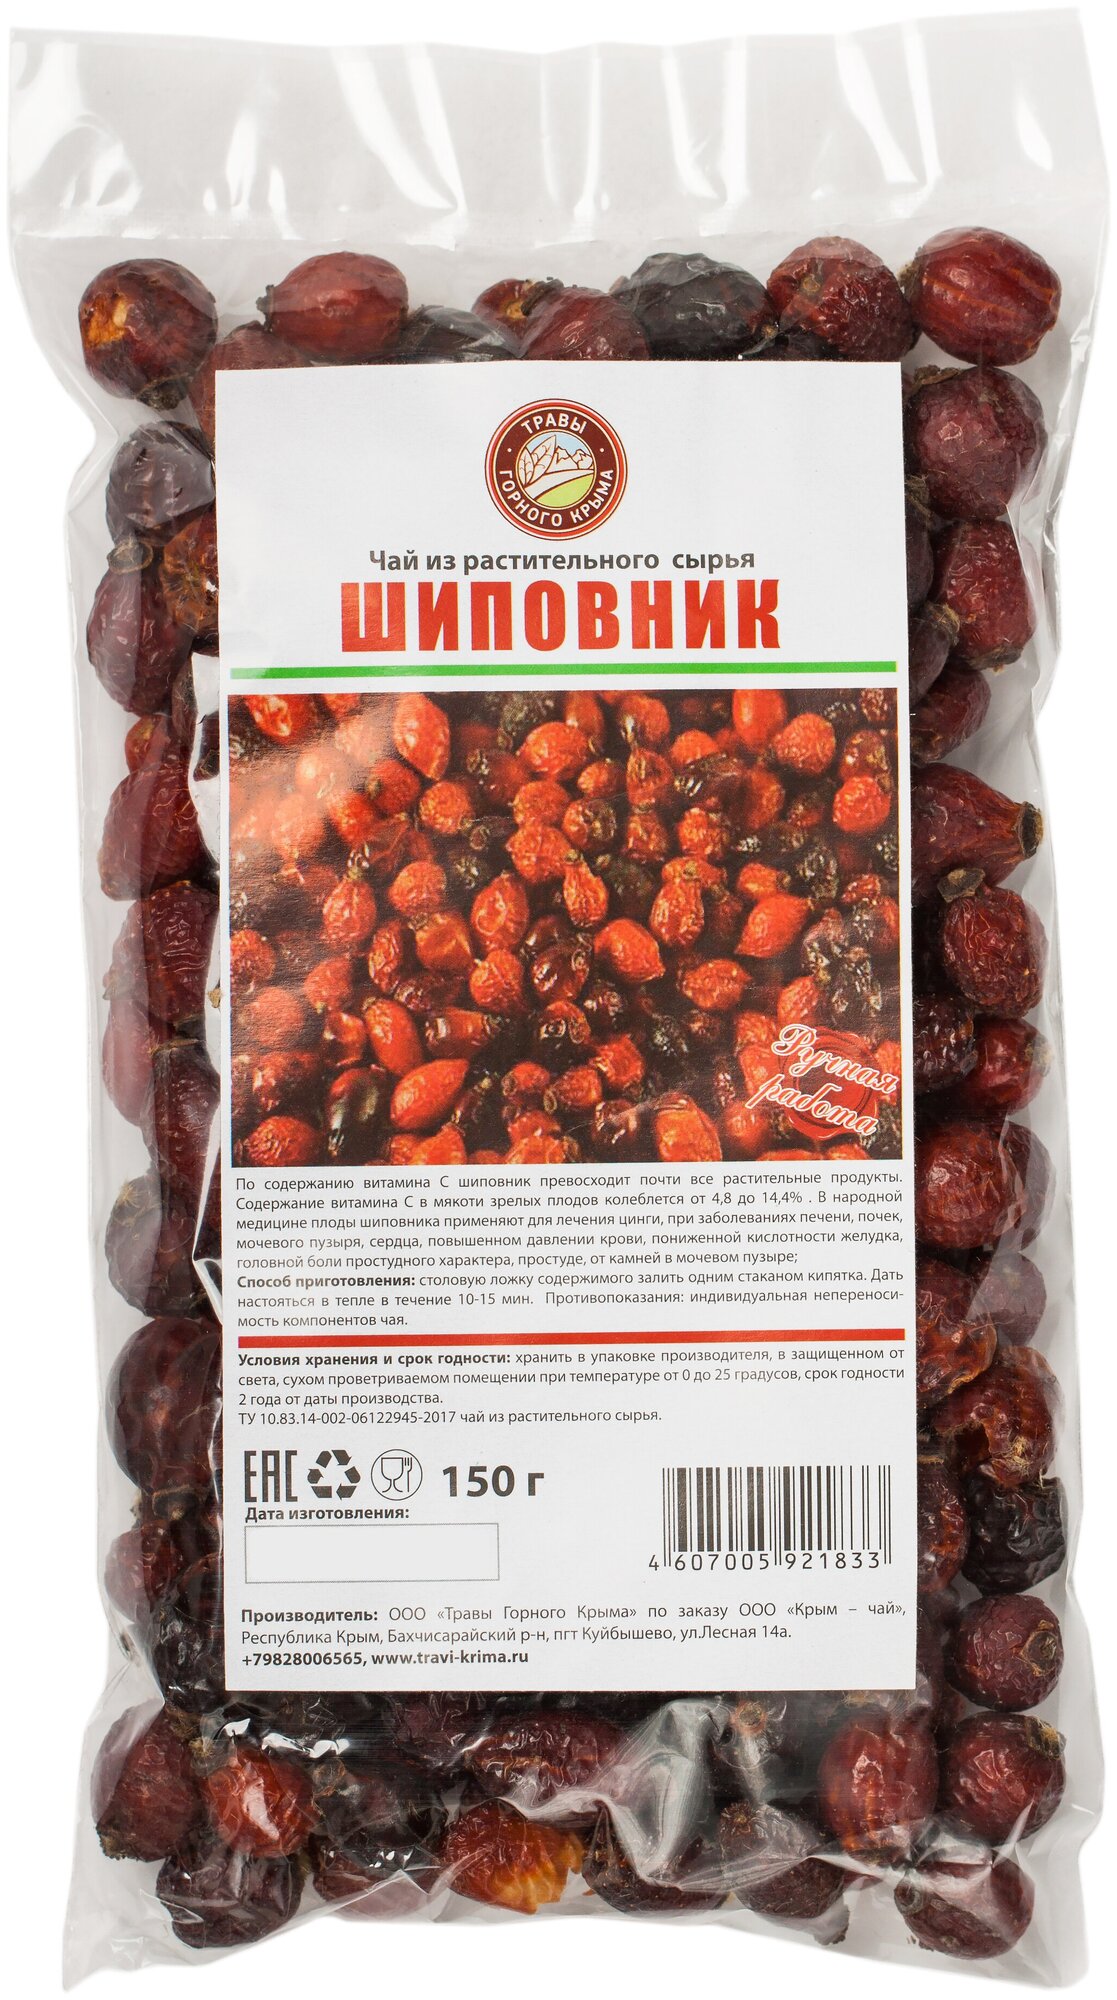 Чай фруктовый Травы горного Крыма Шиповник, 150 г